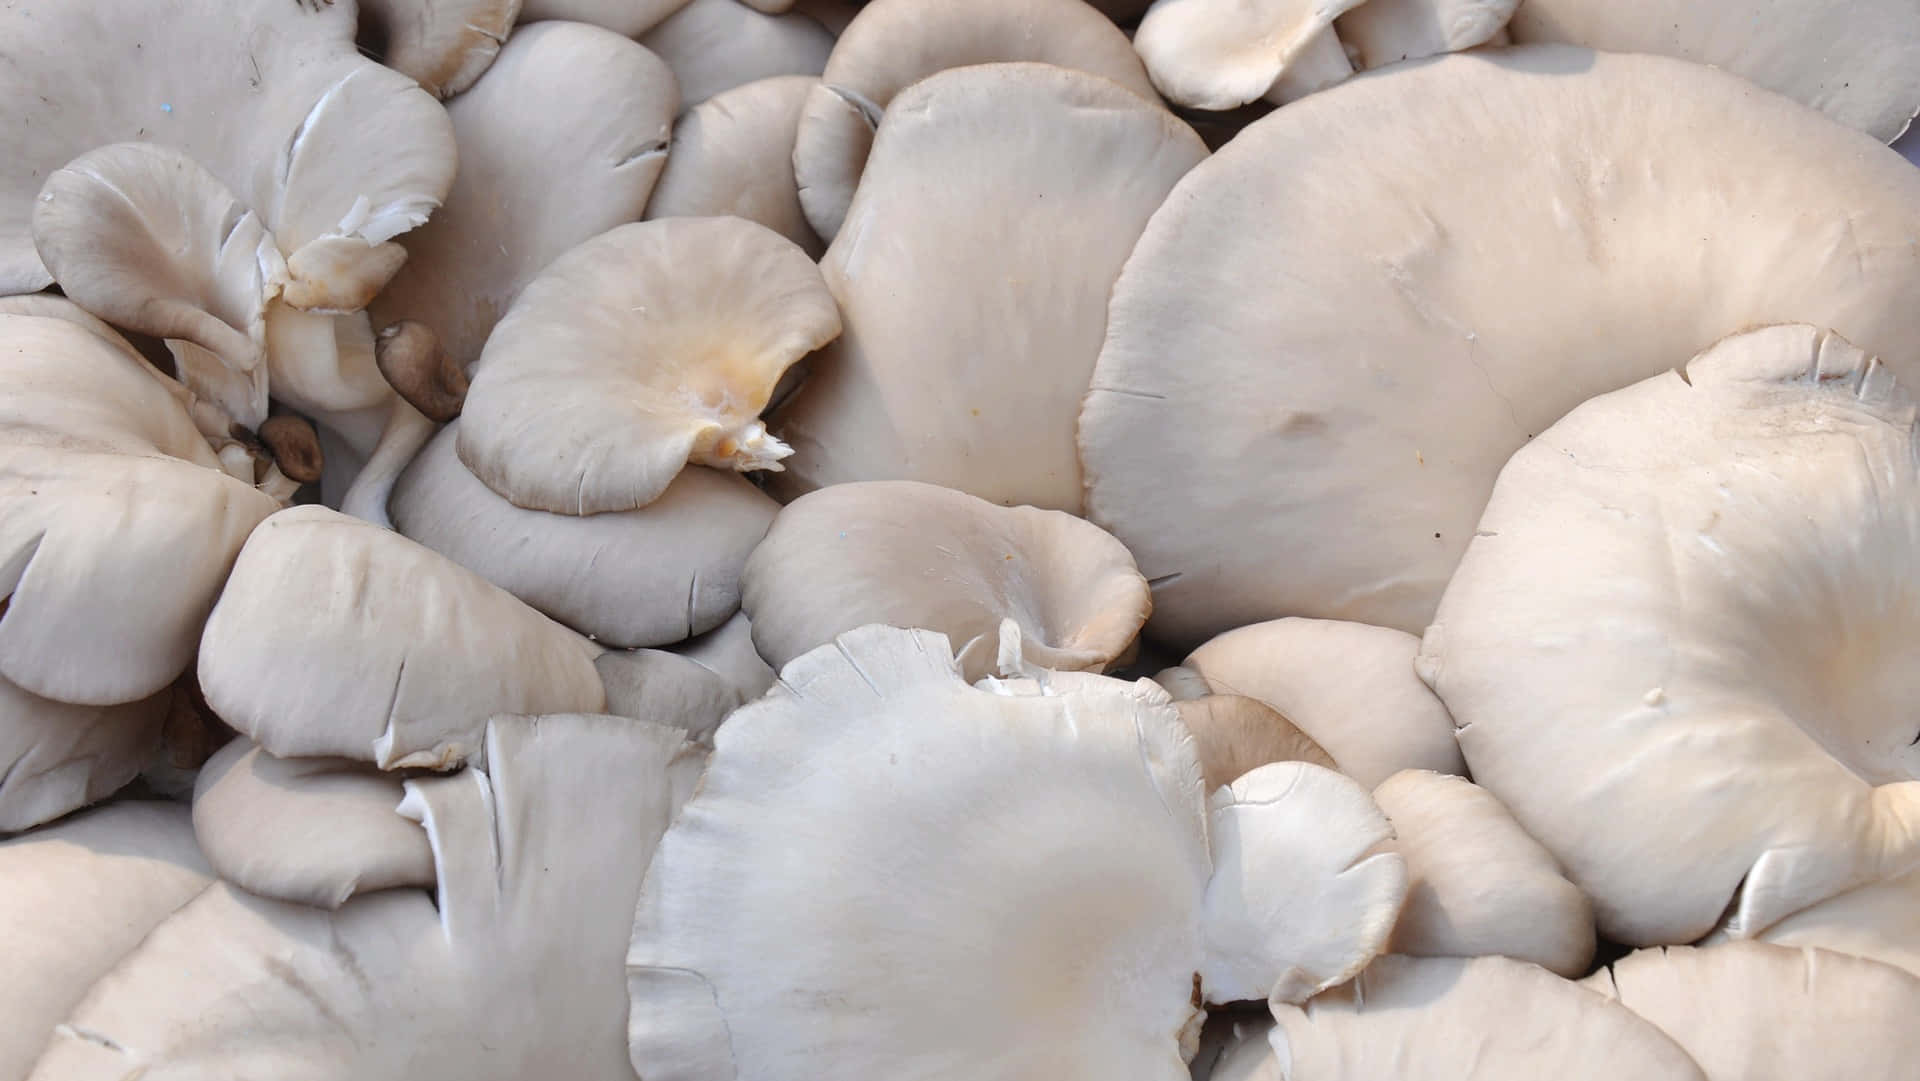 Billeder af spiselige svampe typer tapet